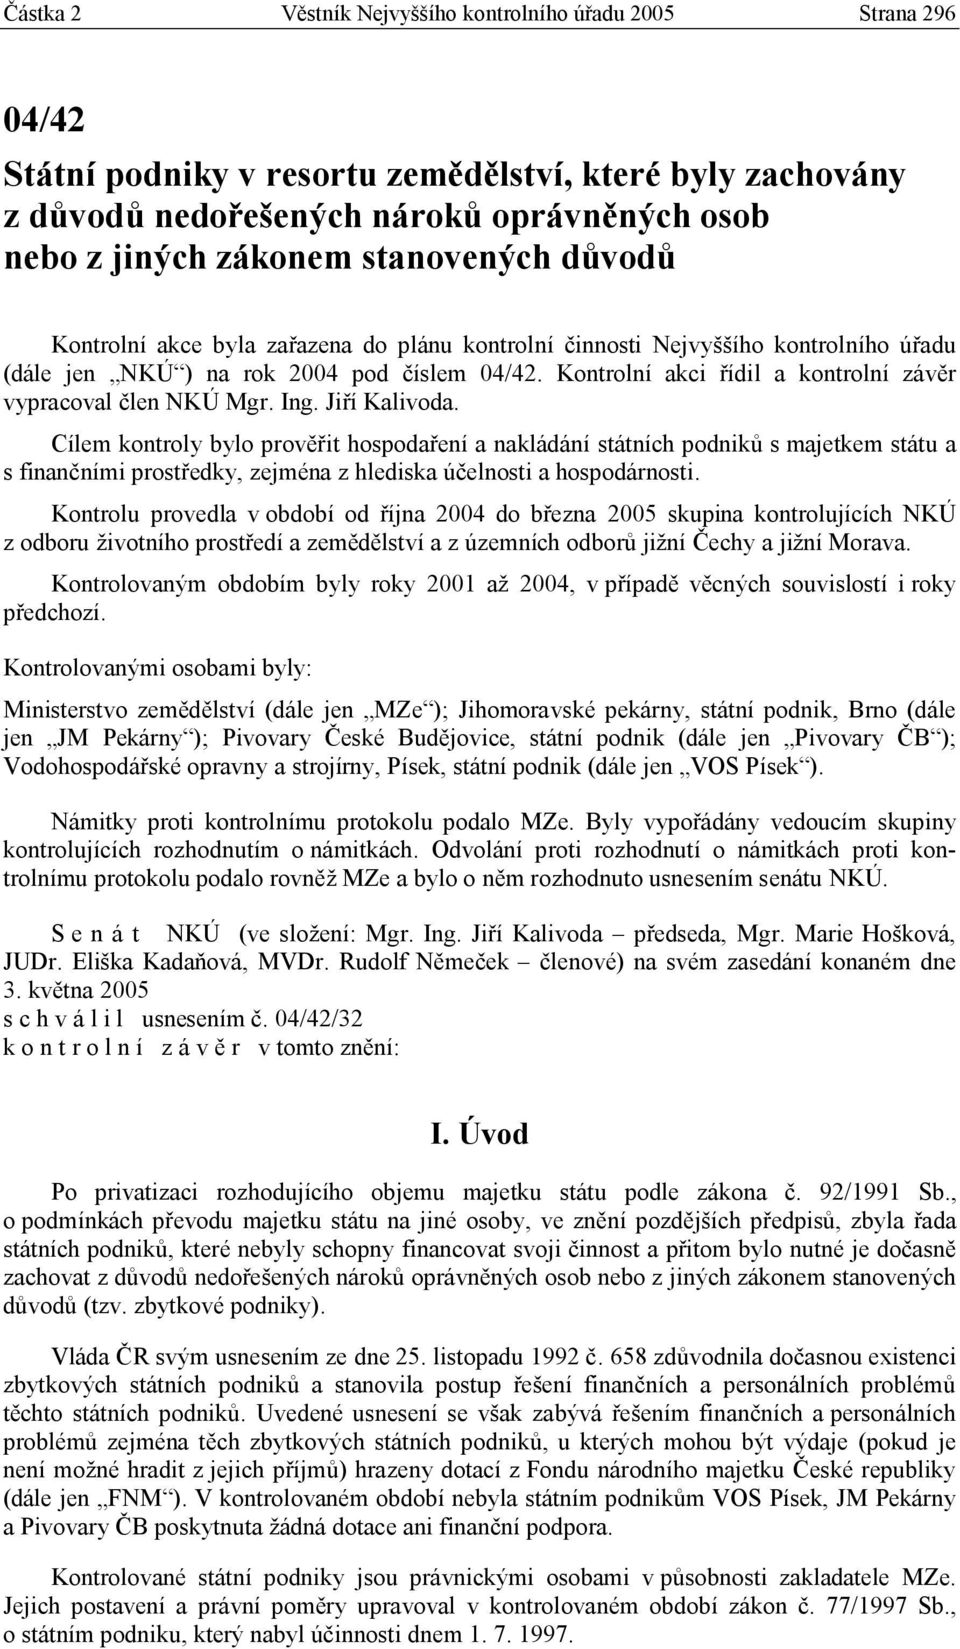 Kontrolní akci řídil a kontrolní závěr vypracoval člen NKÚ Mgr. Ing. Jiří Kalivoda.